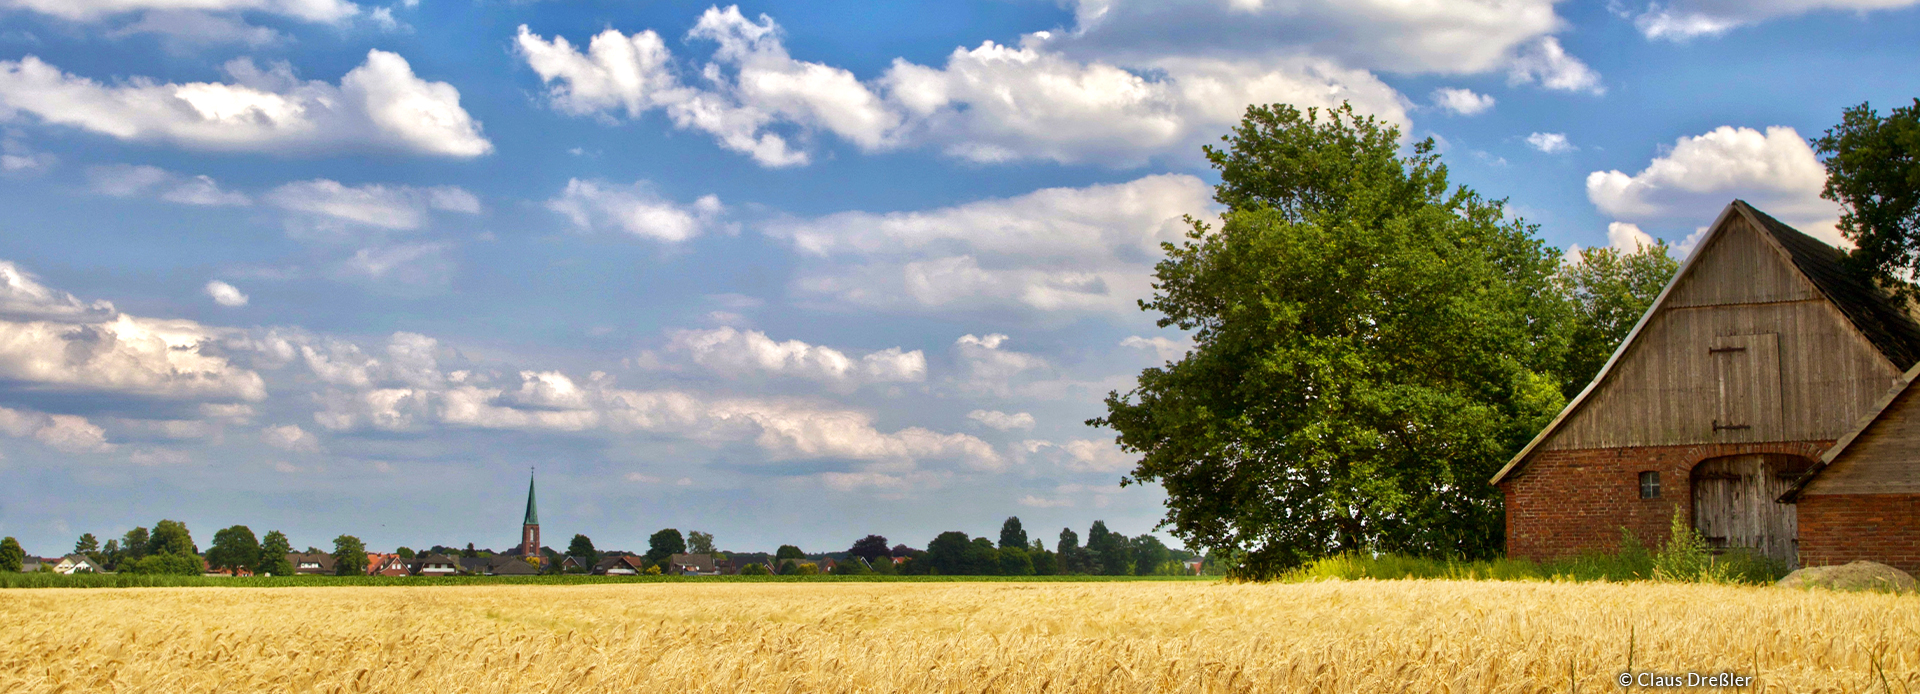 Ein Getreidefeld im Vordergrund mit einer alten Scheune im Hintergrund unter blauen Himmel